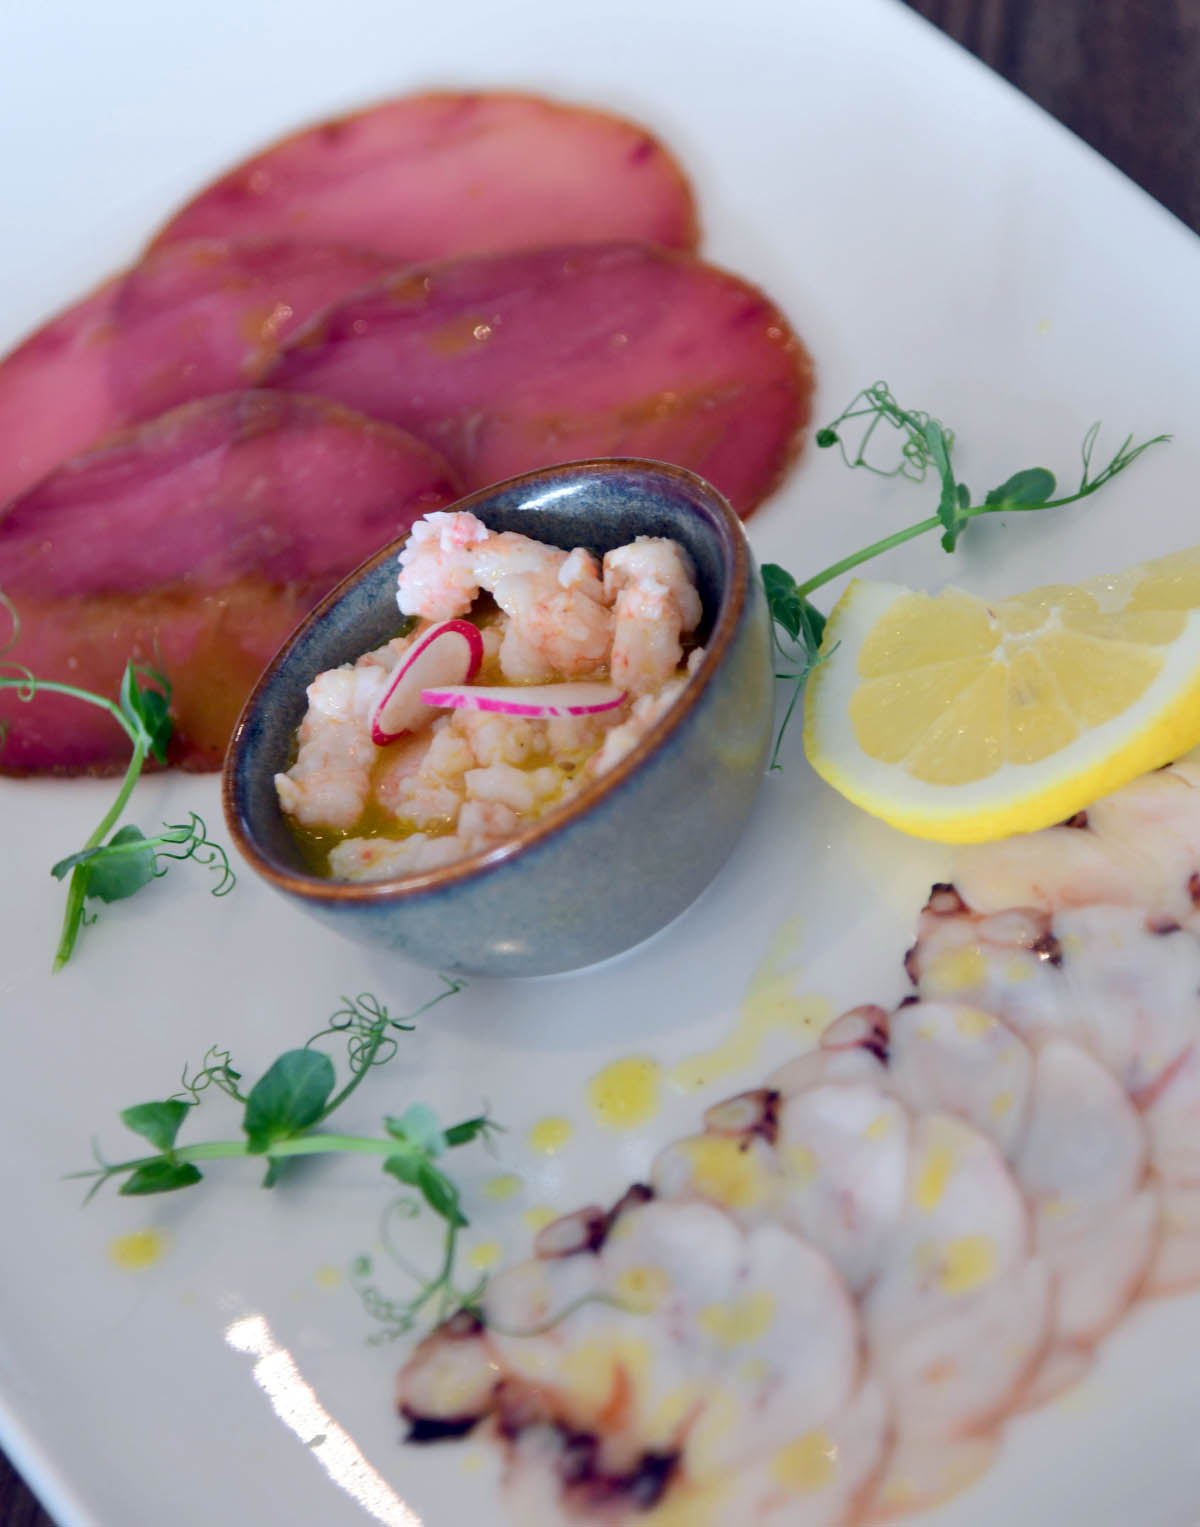 Krčki restoran Galija al mare nudi izvrsne gastro specijalitete